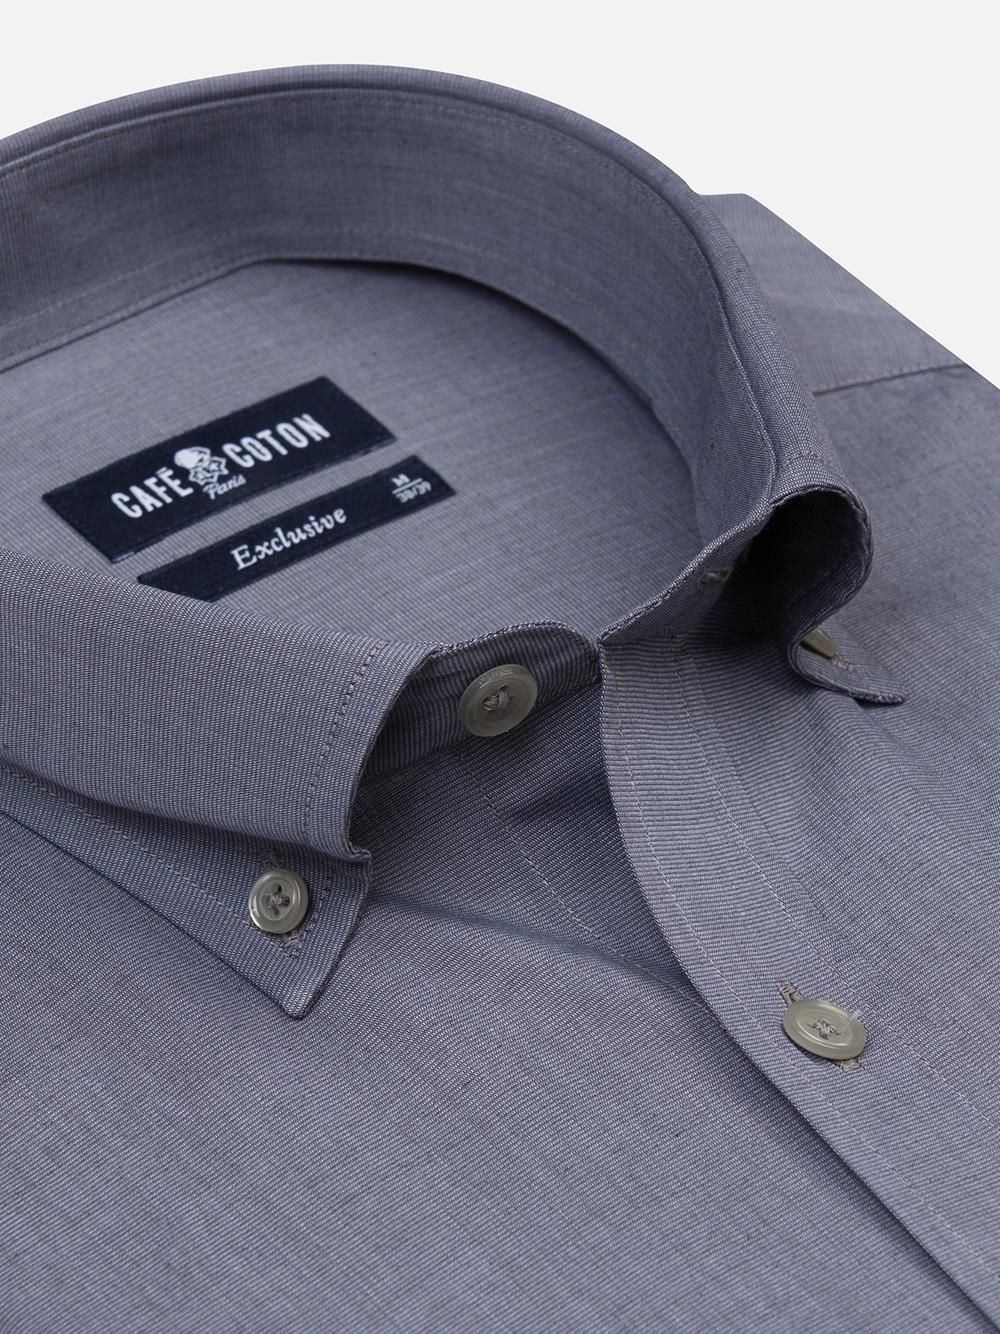 Camicia slim grey in filo - Collo abbottonato